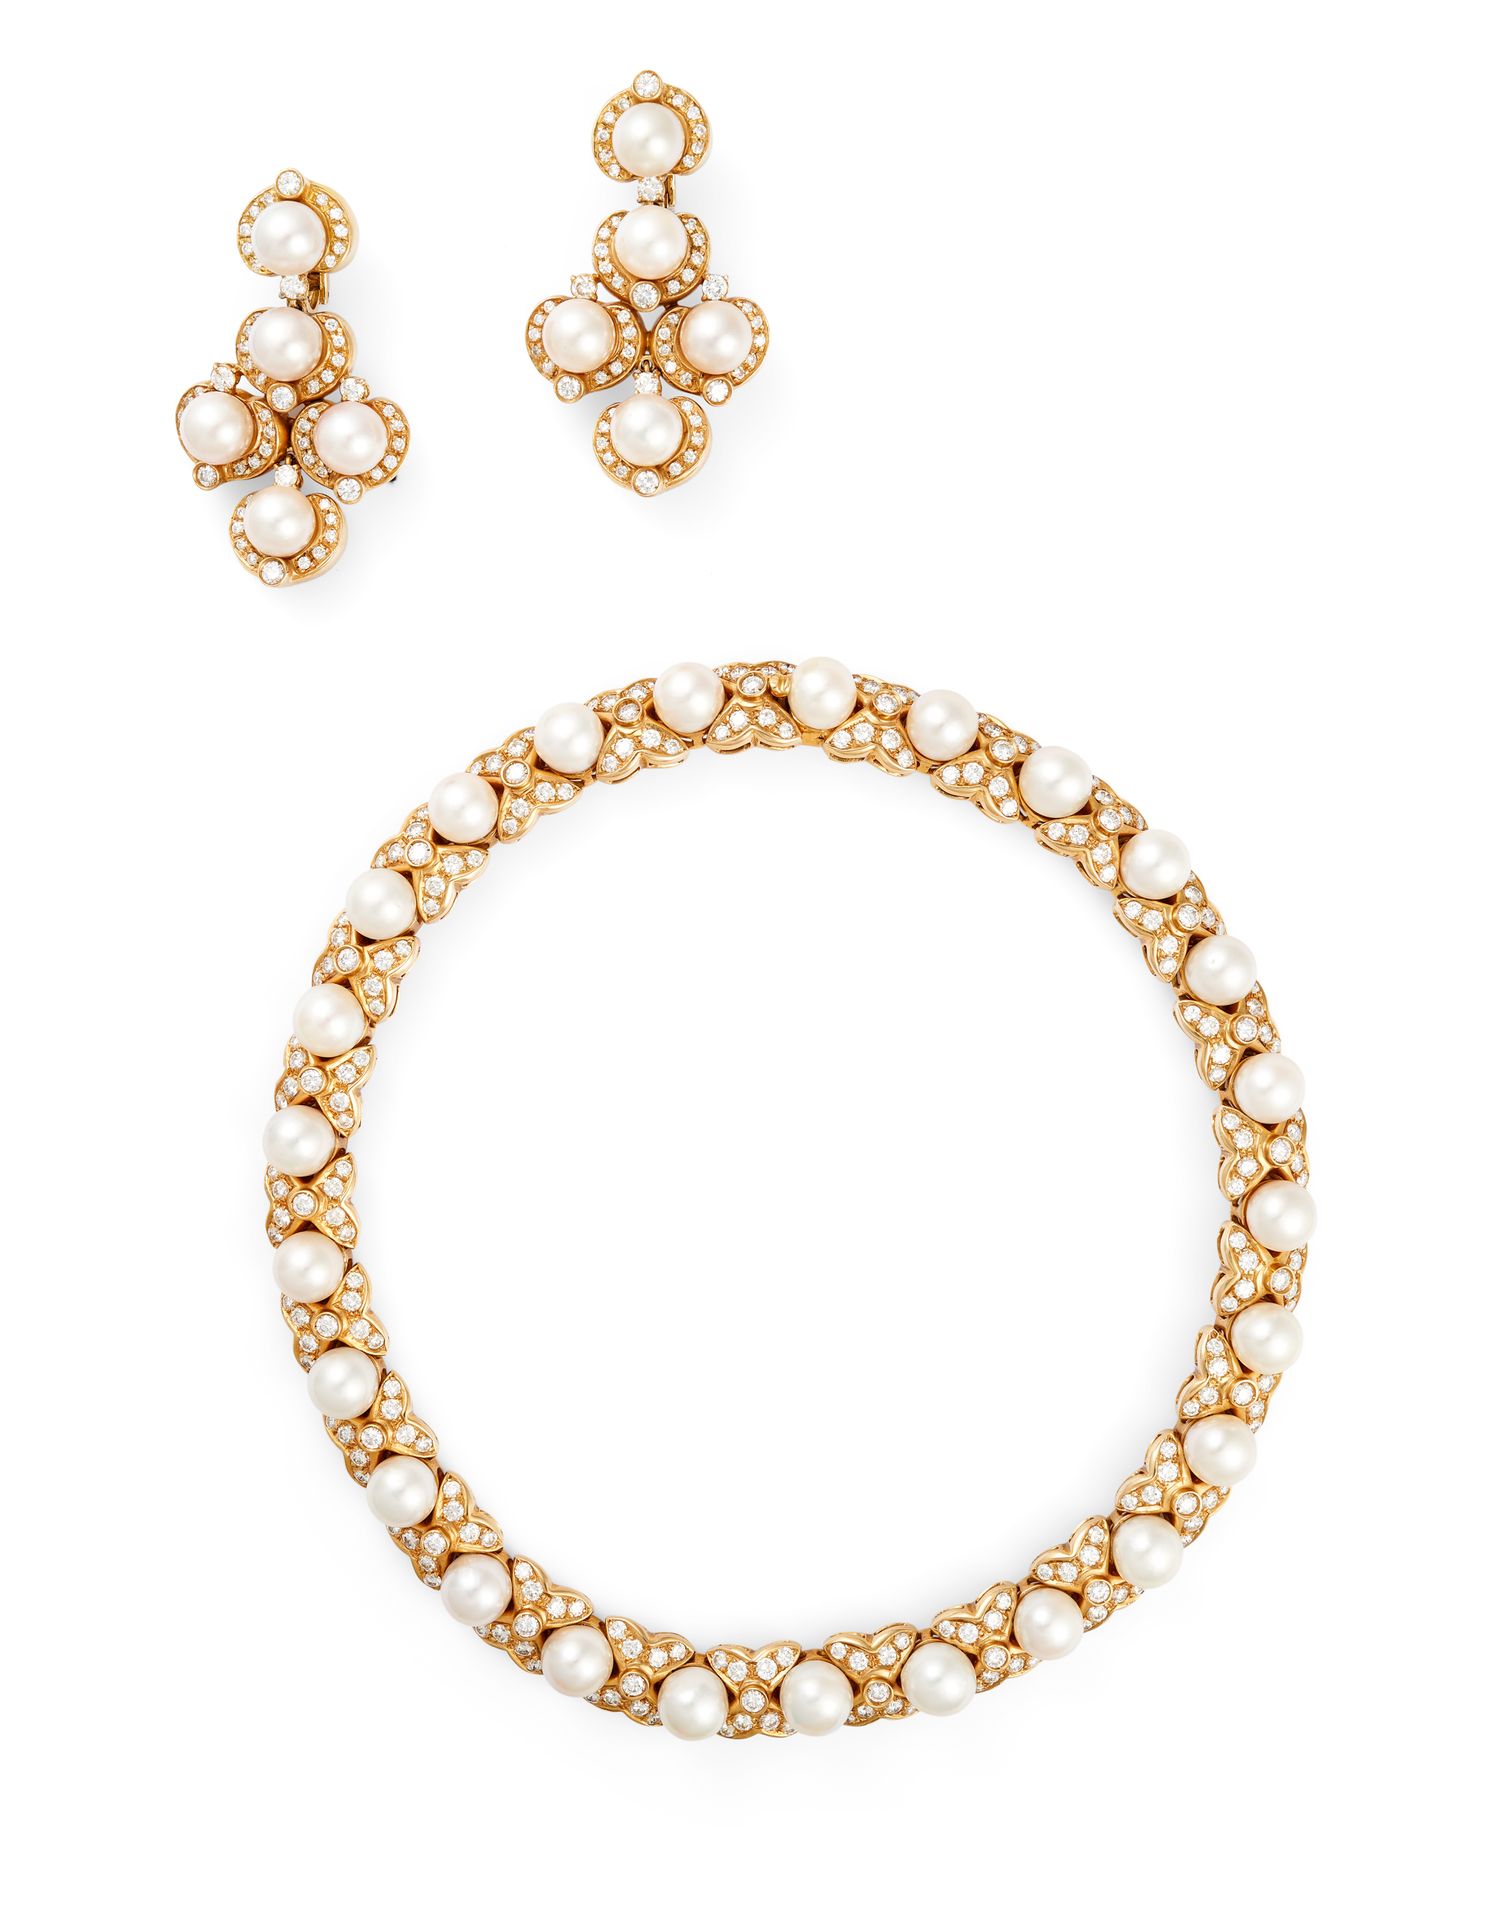 Null 钻石和珍珠半宝石 18K黄金，包括一条项链和一对耳环。项链上镶有25颗白色珍珠（+/-9毫米）和明亮型切割钻石。耳环上有5颗珍珠和明亮型切割钻石。

&hellip;